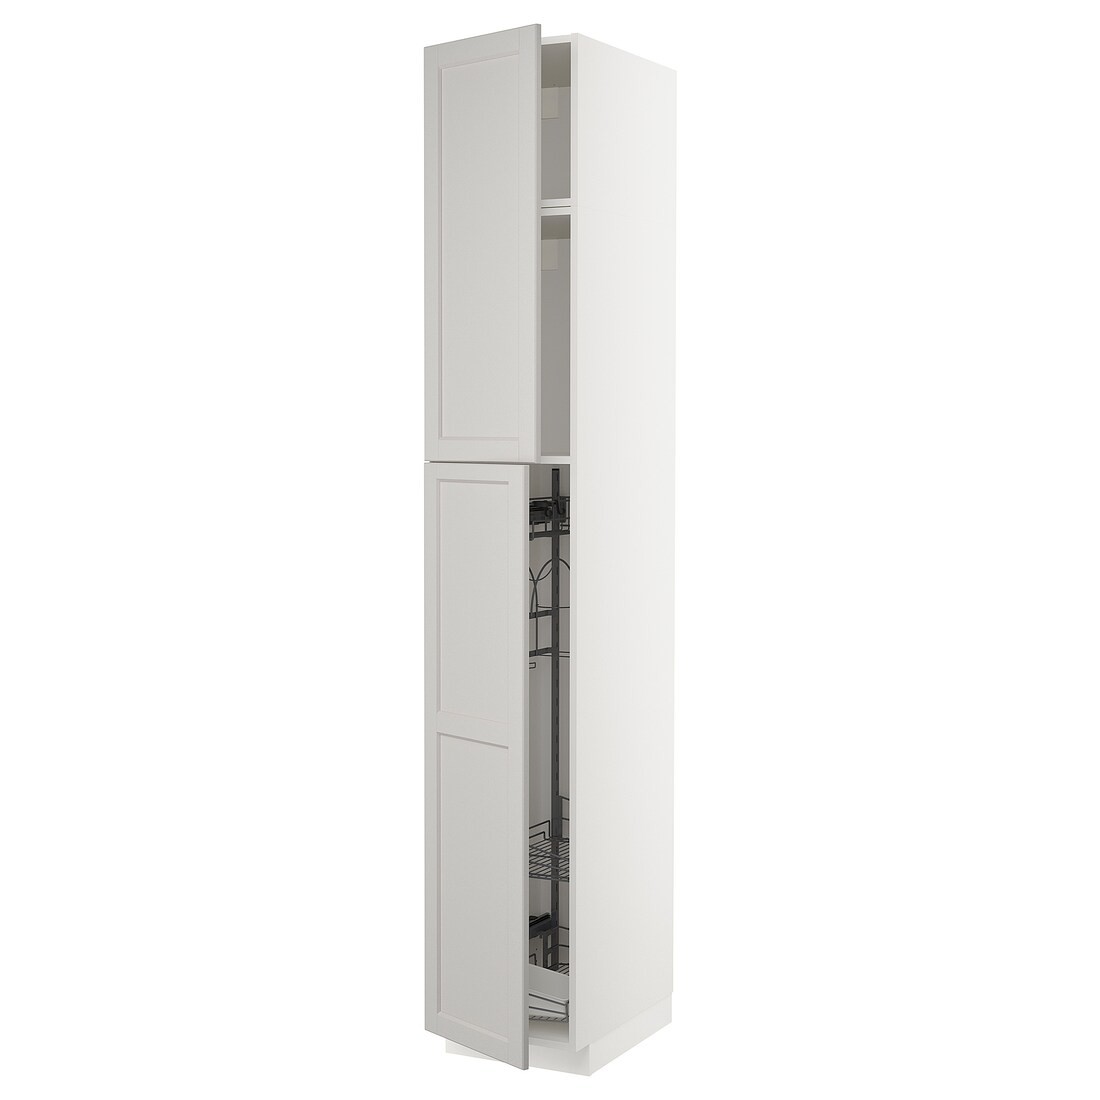 METOD МЕТОД Высокий шкаф с отделением для аксессуаров для уборки, белый / Lerhyttan светло-серый, 40x60x240 см